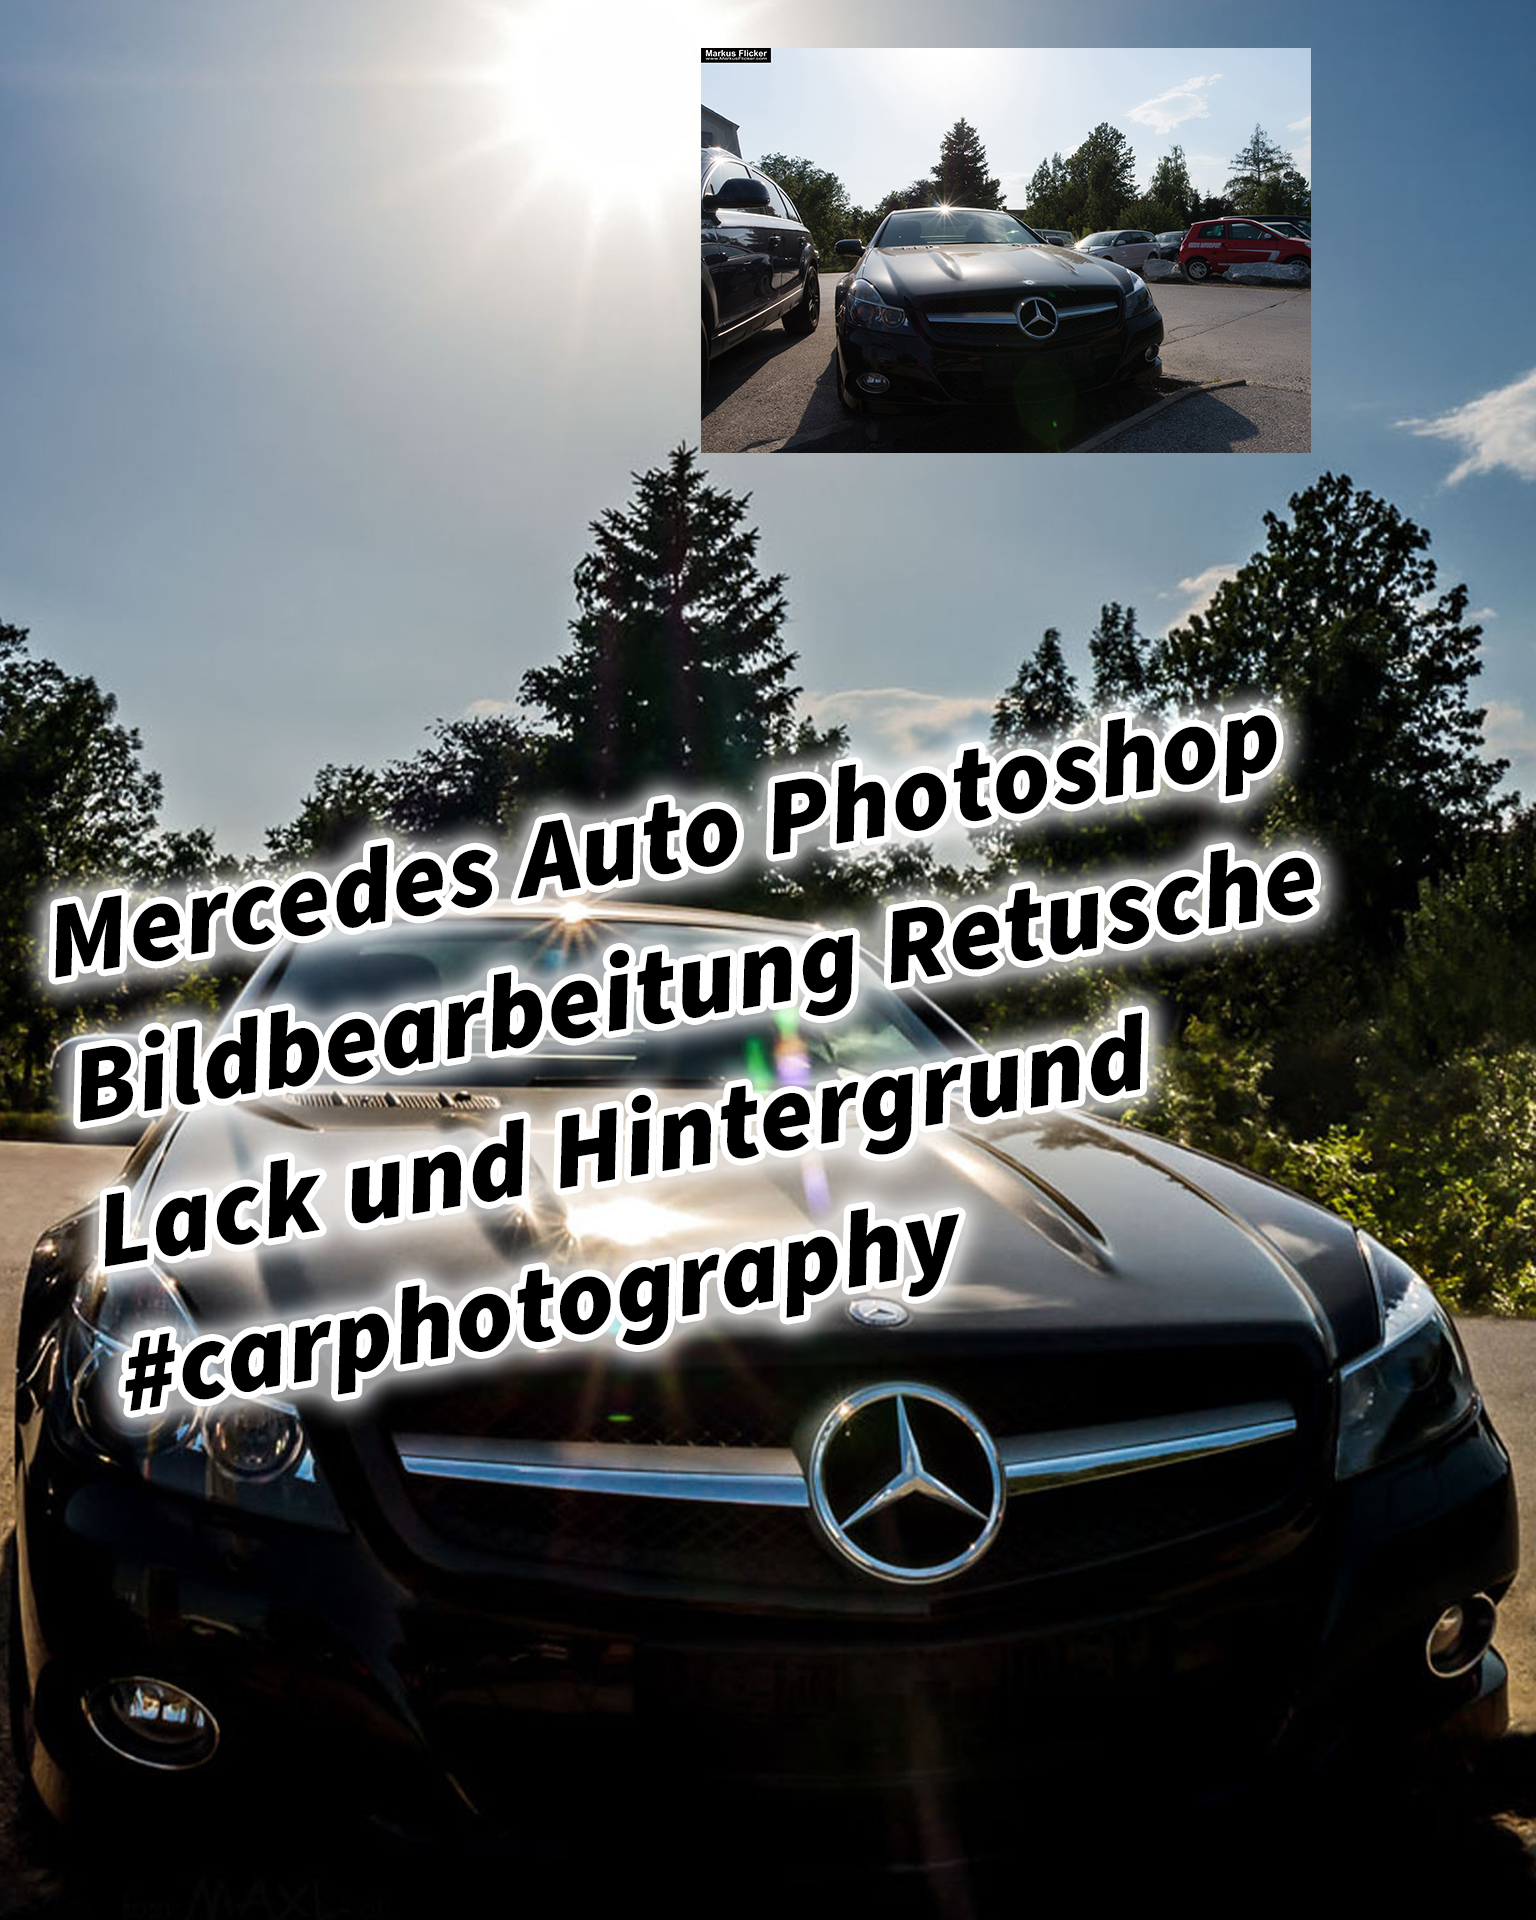 Mercedes Auto Photoshop Bildbearbeitung Retusche Lack und Hintergrund #carphotography